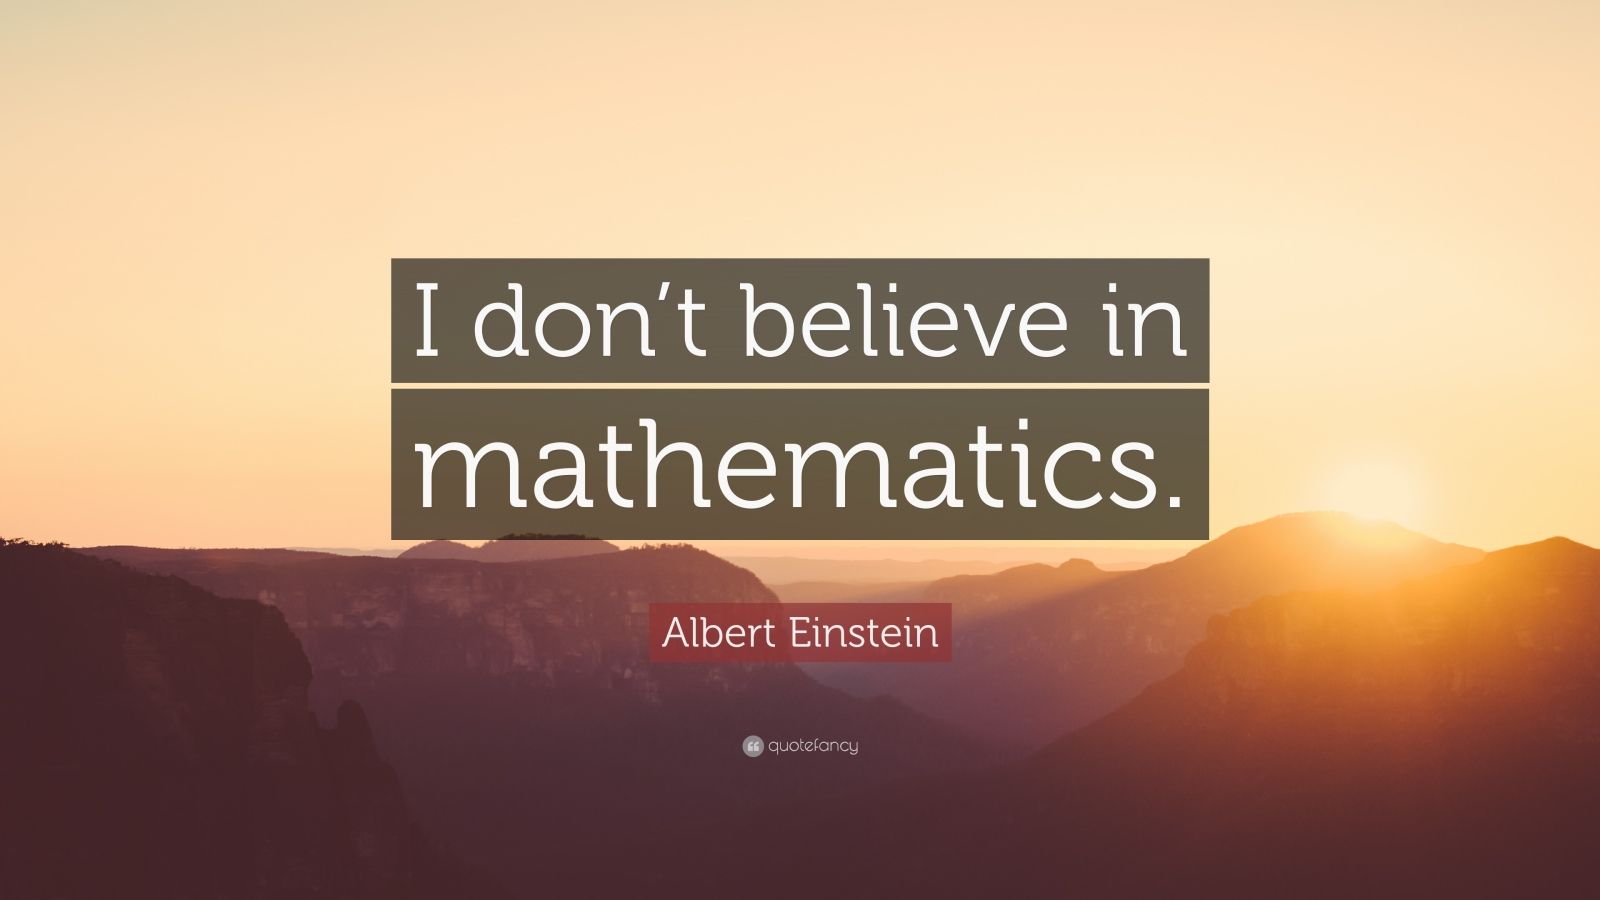 Albert Einstein Quote: “I don’t believe in mathematics.” (7 wallpapers